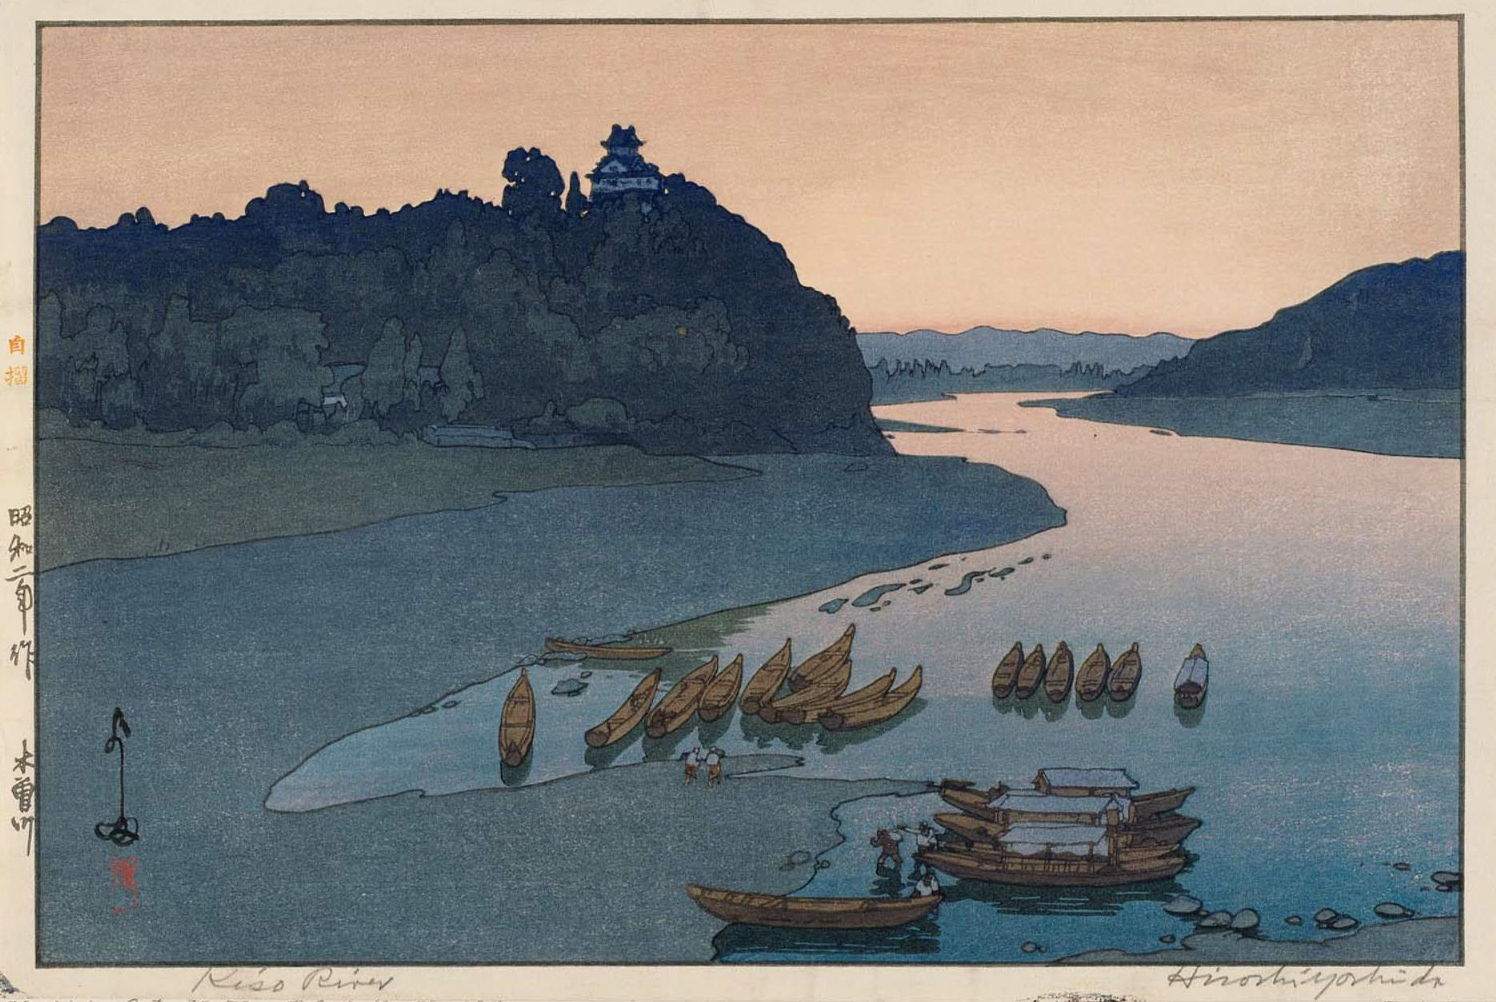 Kiso River woodblock print